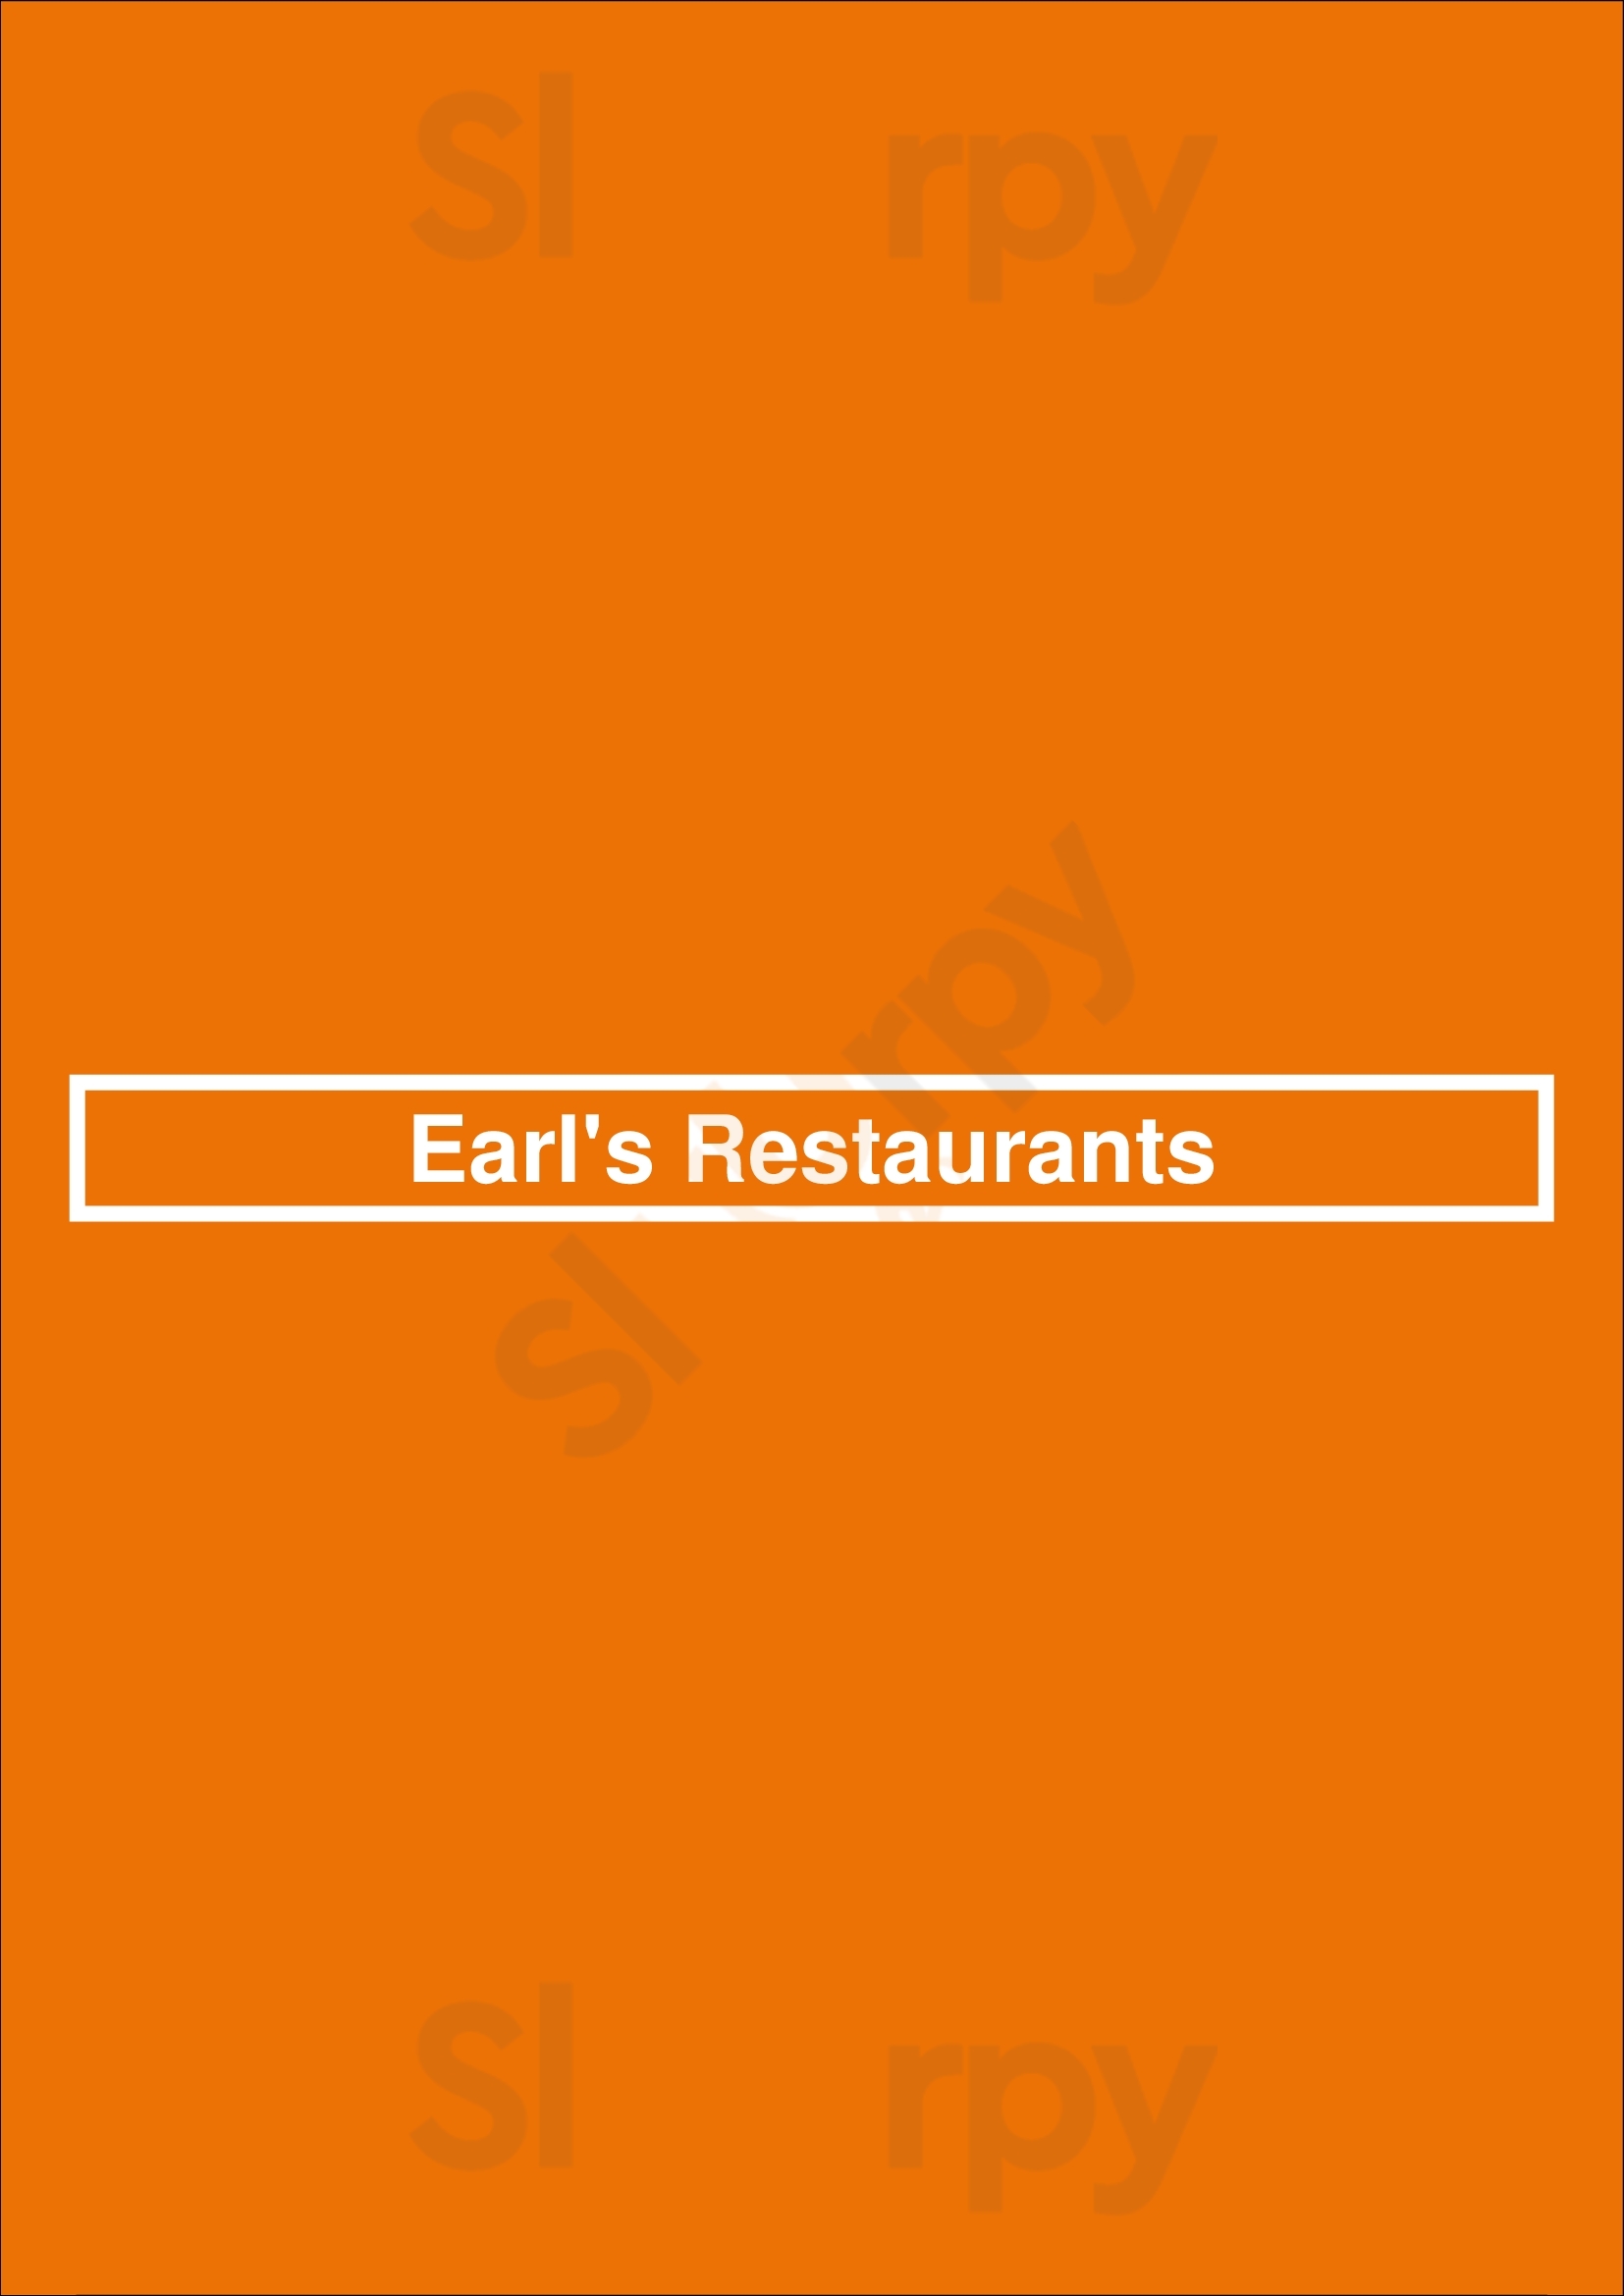 Earl's Restaurants Surrey Menu - 1